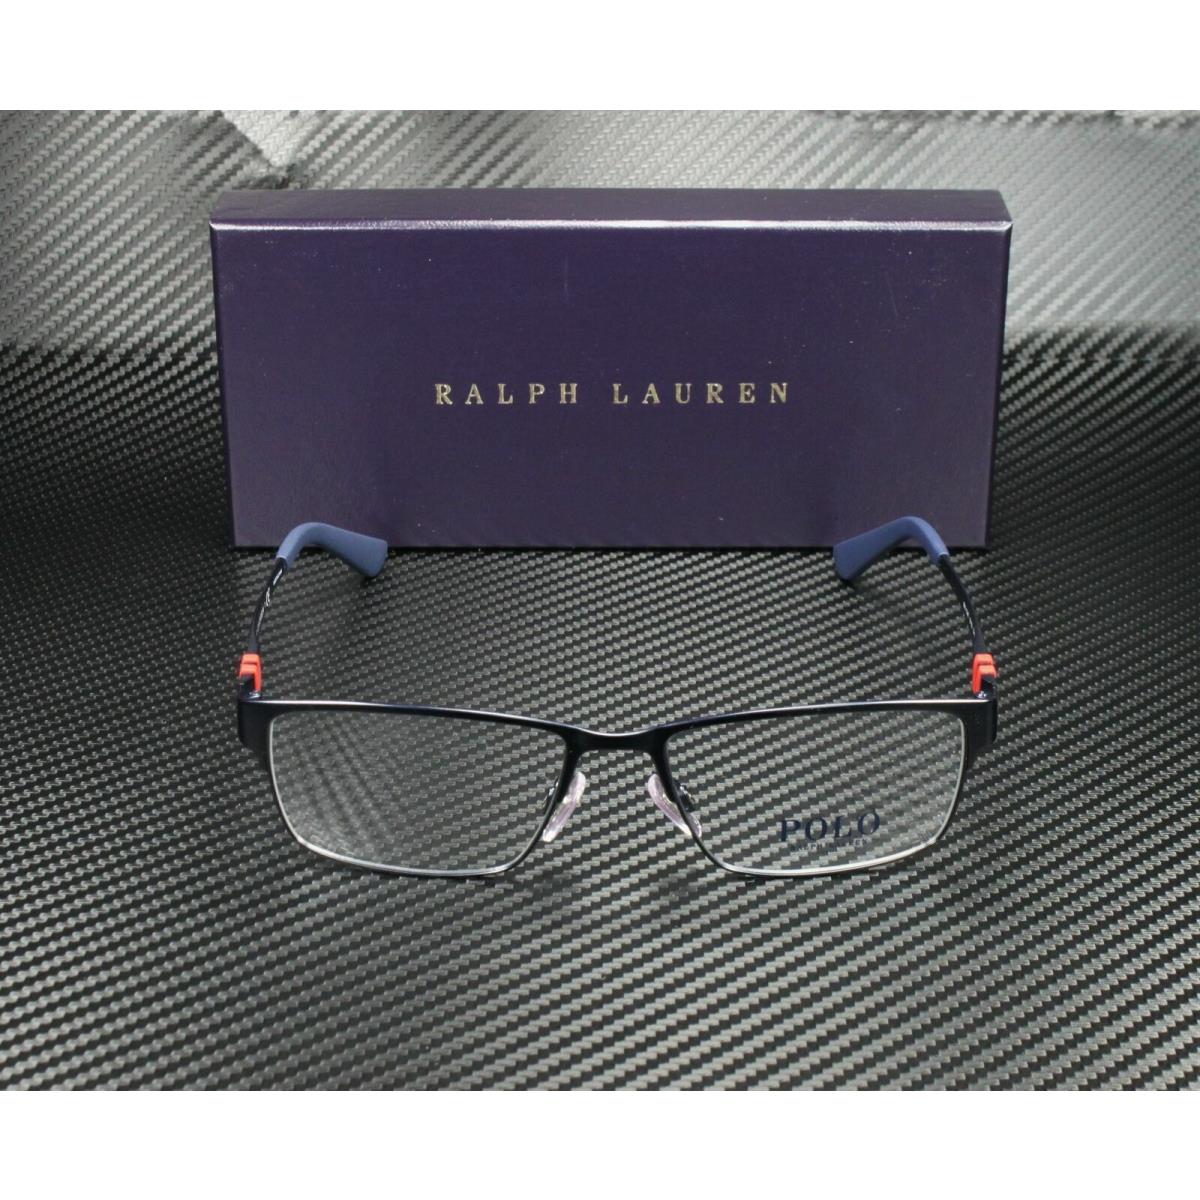 Ralph Lauren eyeglasses  - Blue Frame 0